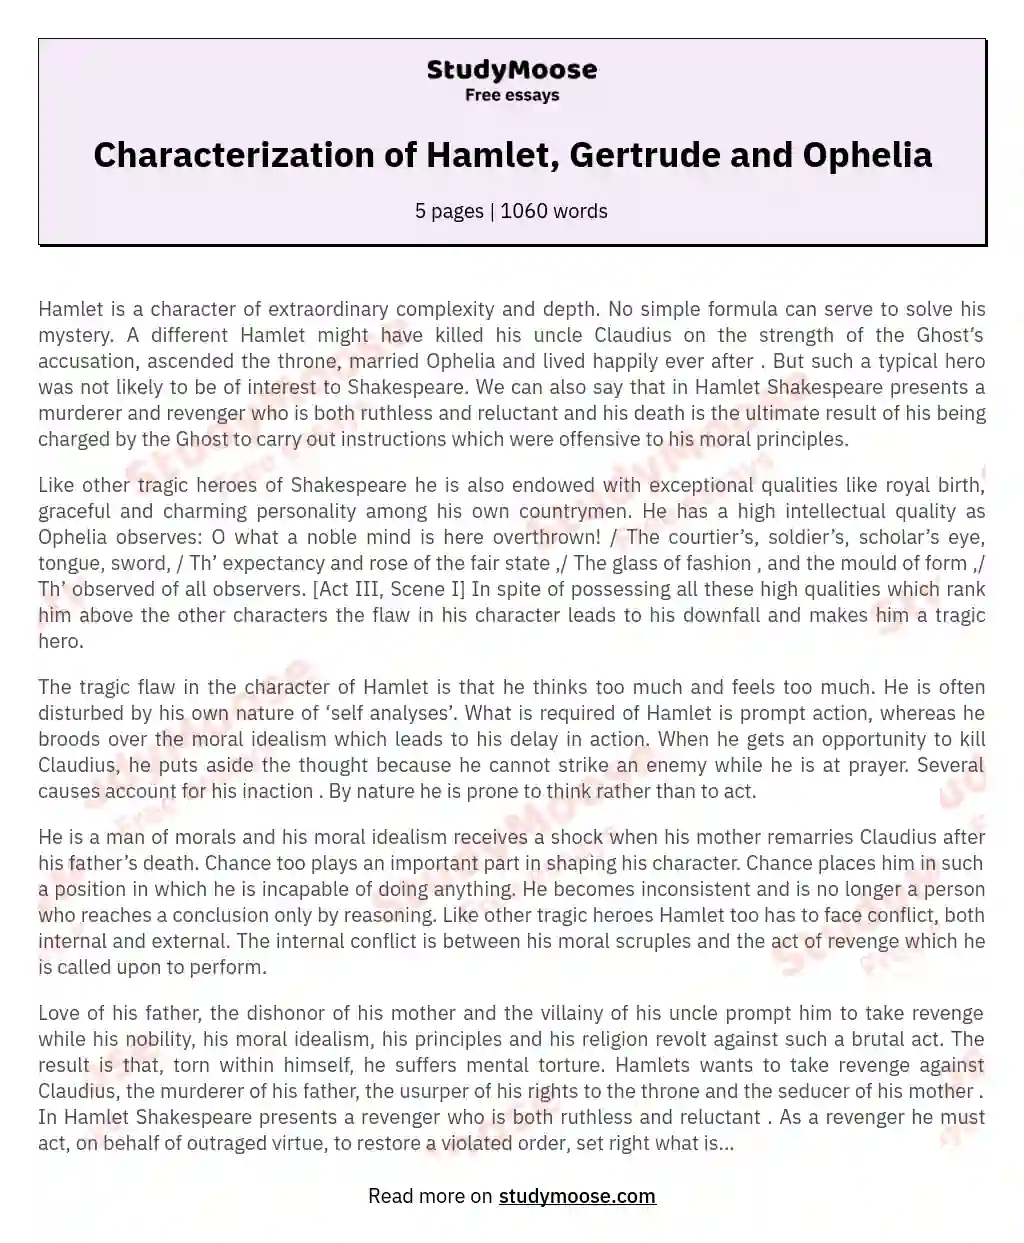 Characterization of Hamlet, Gertrude and Ophelia